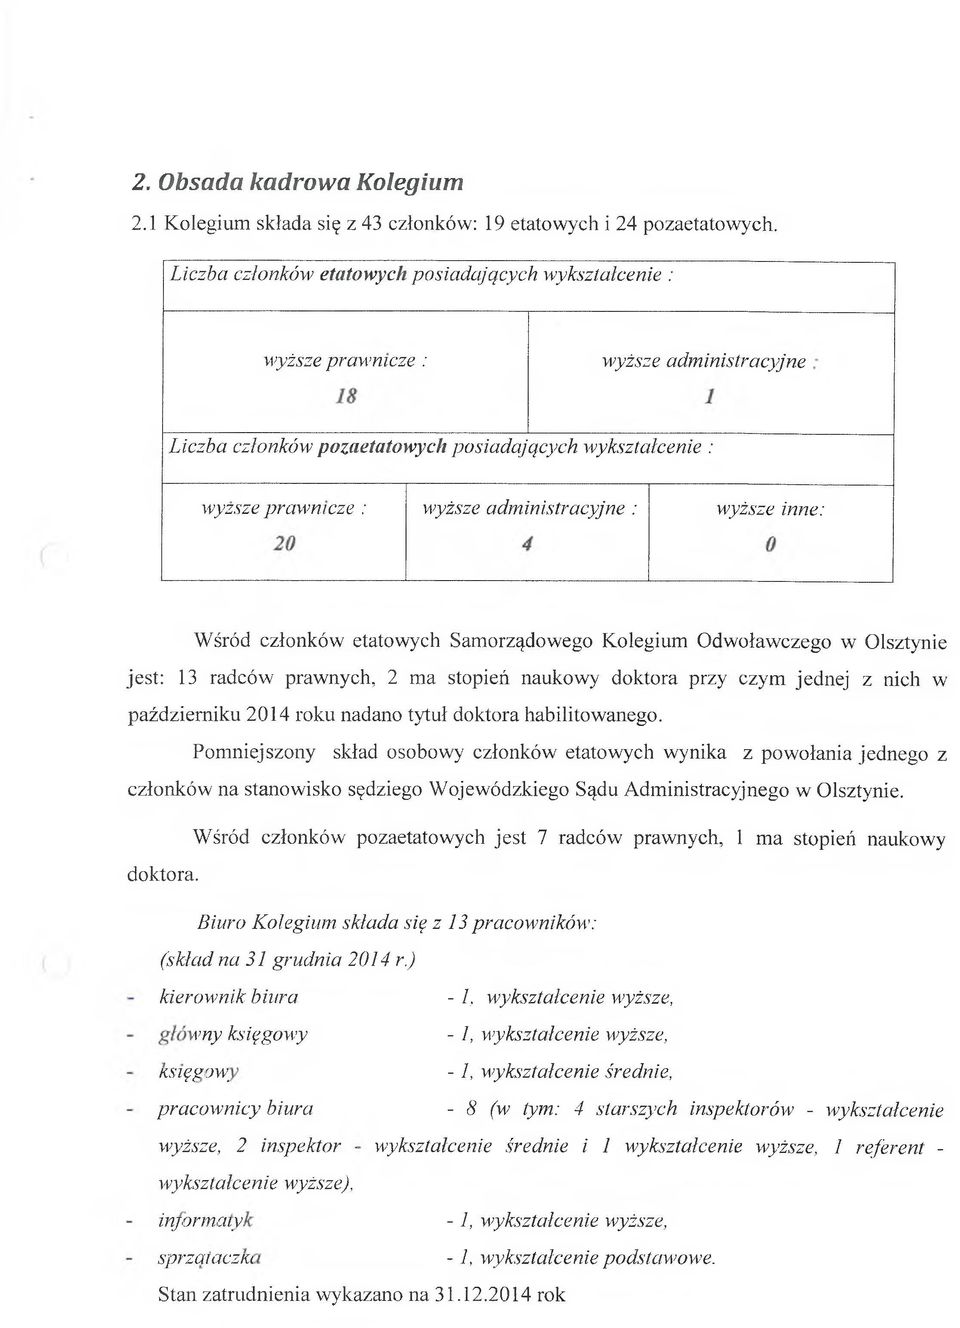 administracyjne : 0 wyższe inne: Wśród członków etatowych Samorządowego Kolegium Odwoławczego w Olsztynie jest: 13 radców prawnych, 2 ma stopień naukowy doktora przy czym jednej z nich w październiku